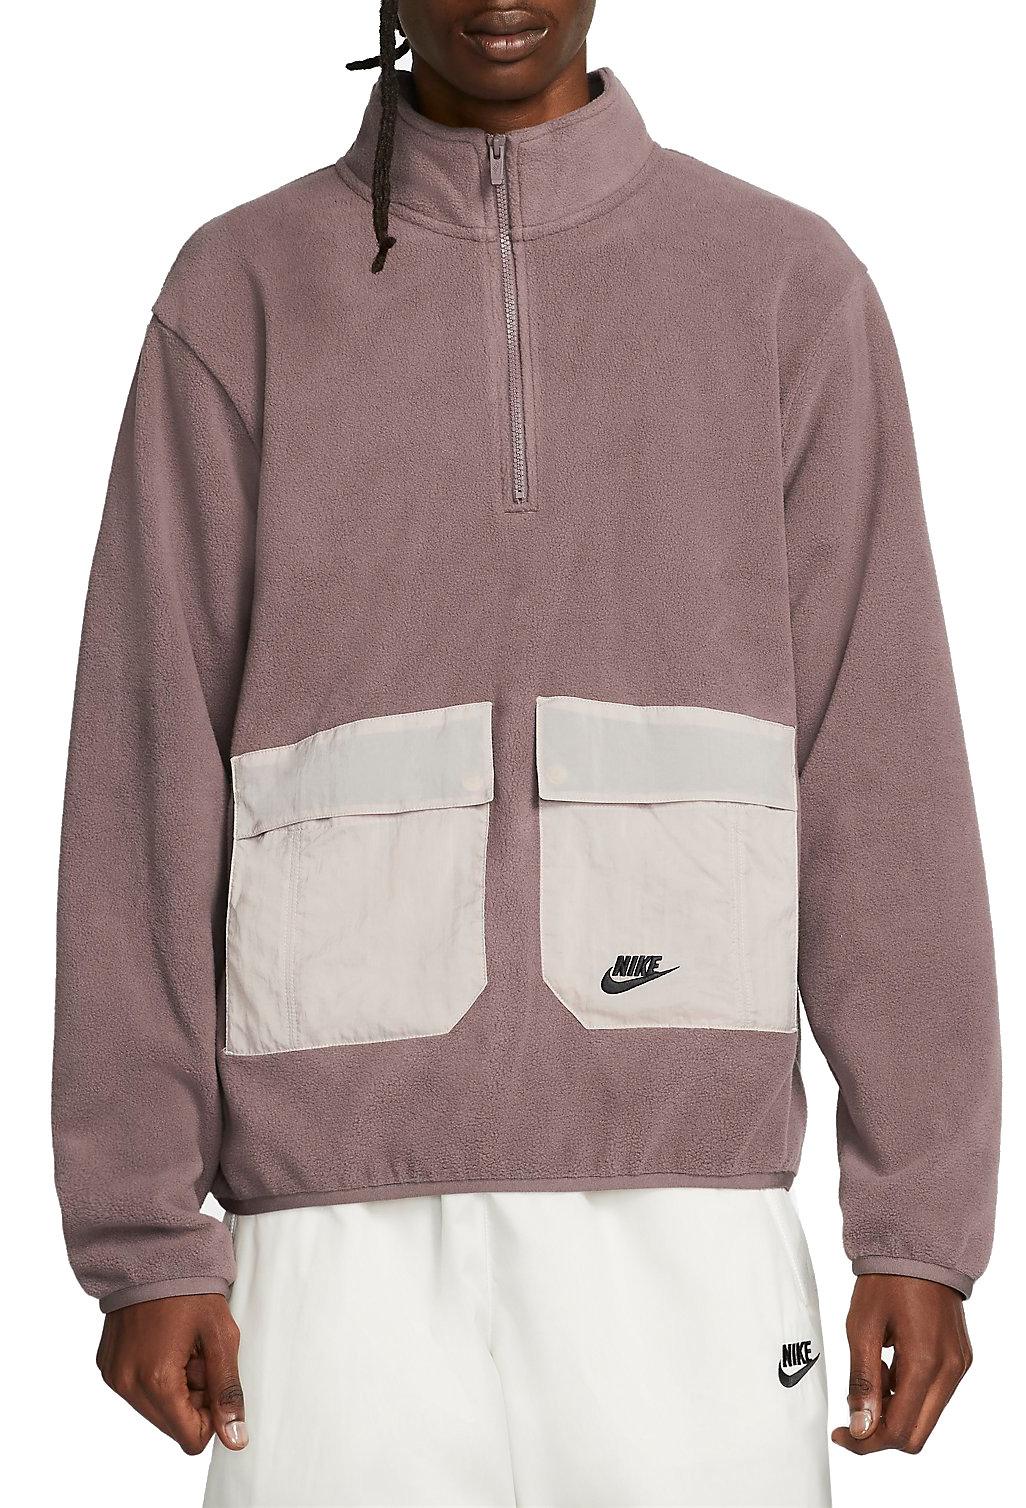 Pánská flísová mikina s polovičním zipem Nike Sportswear